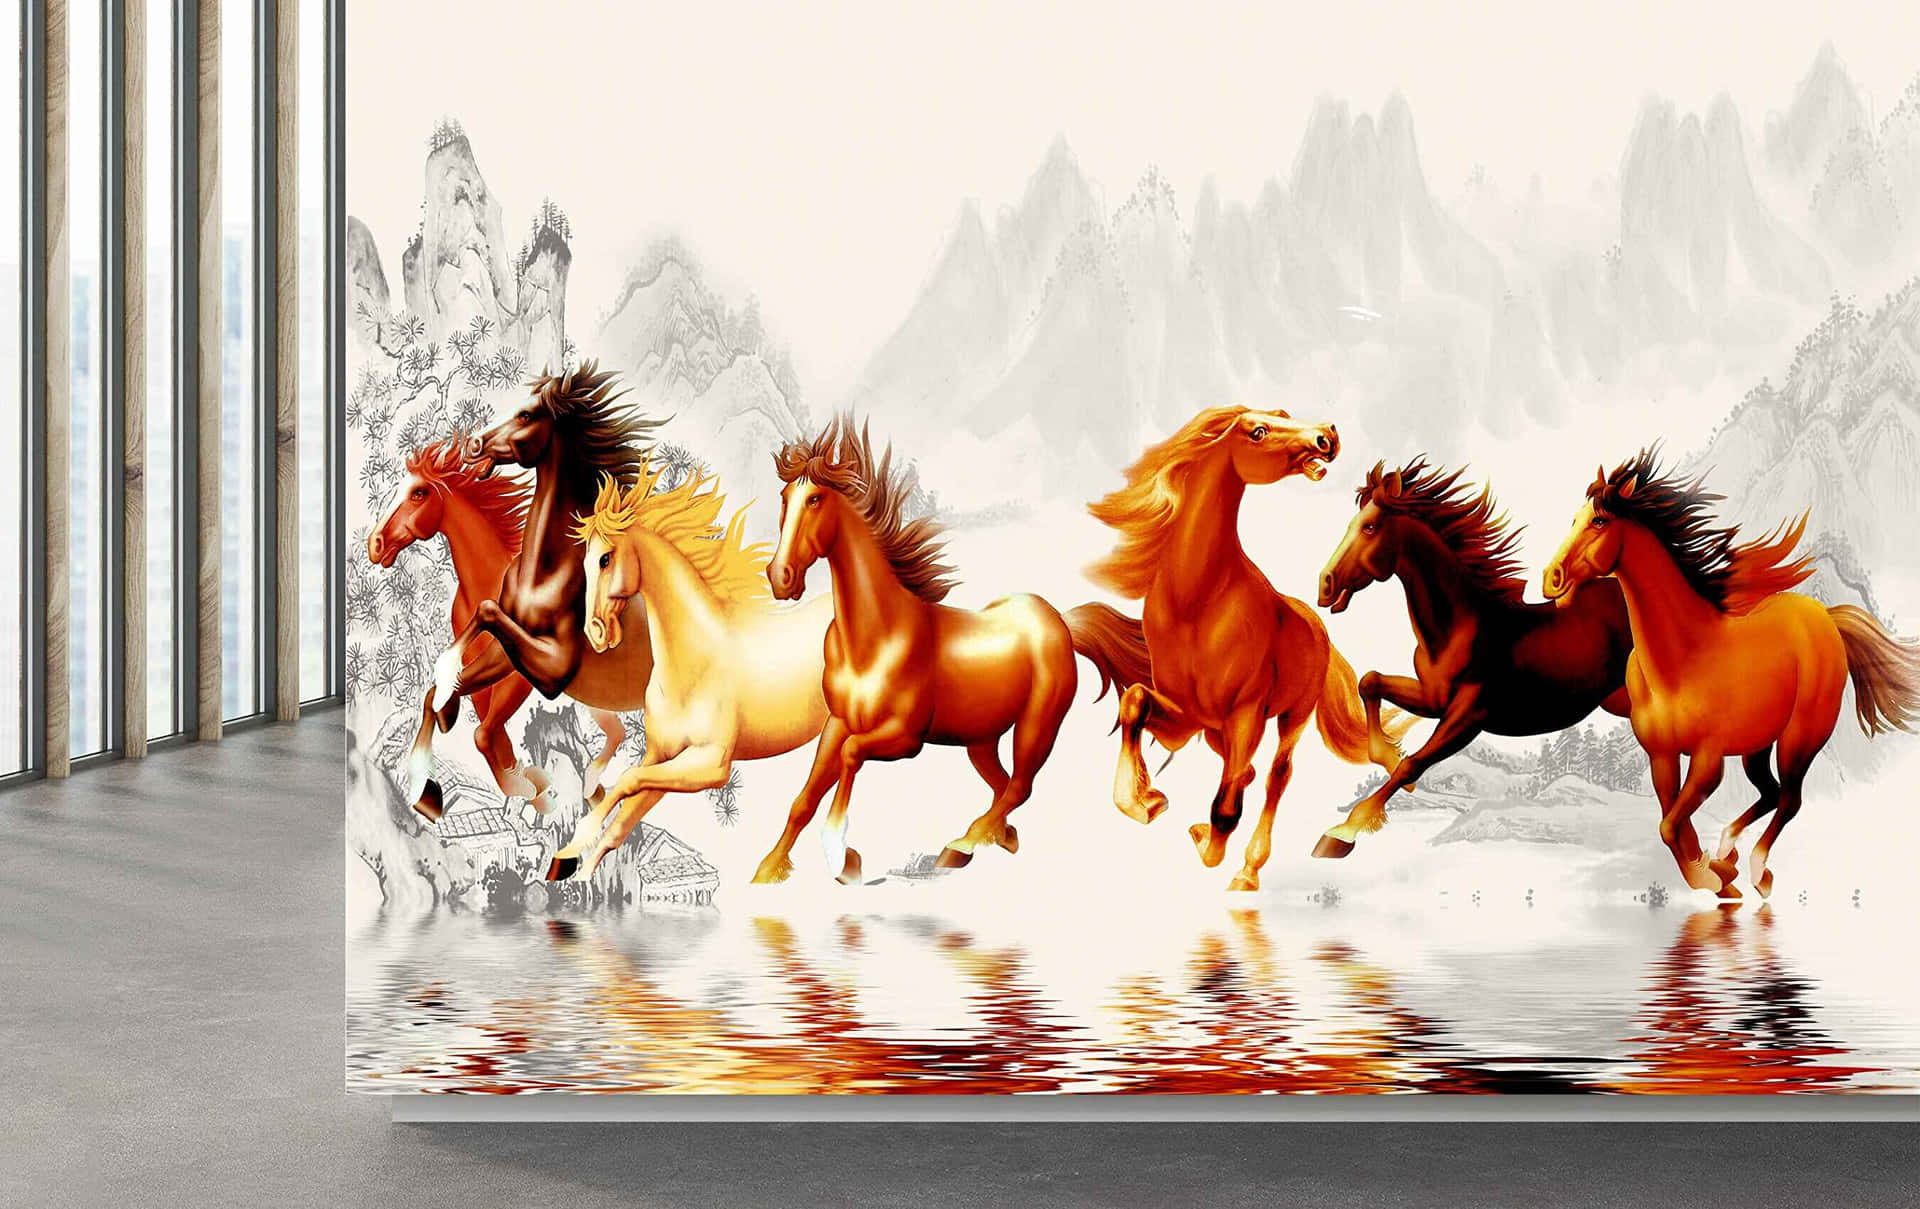 7 Horses Image On Grey Room Background